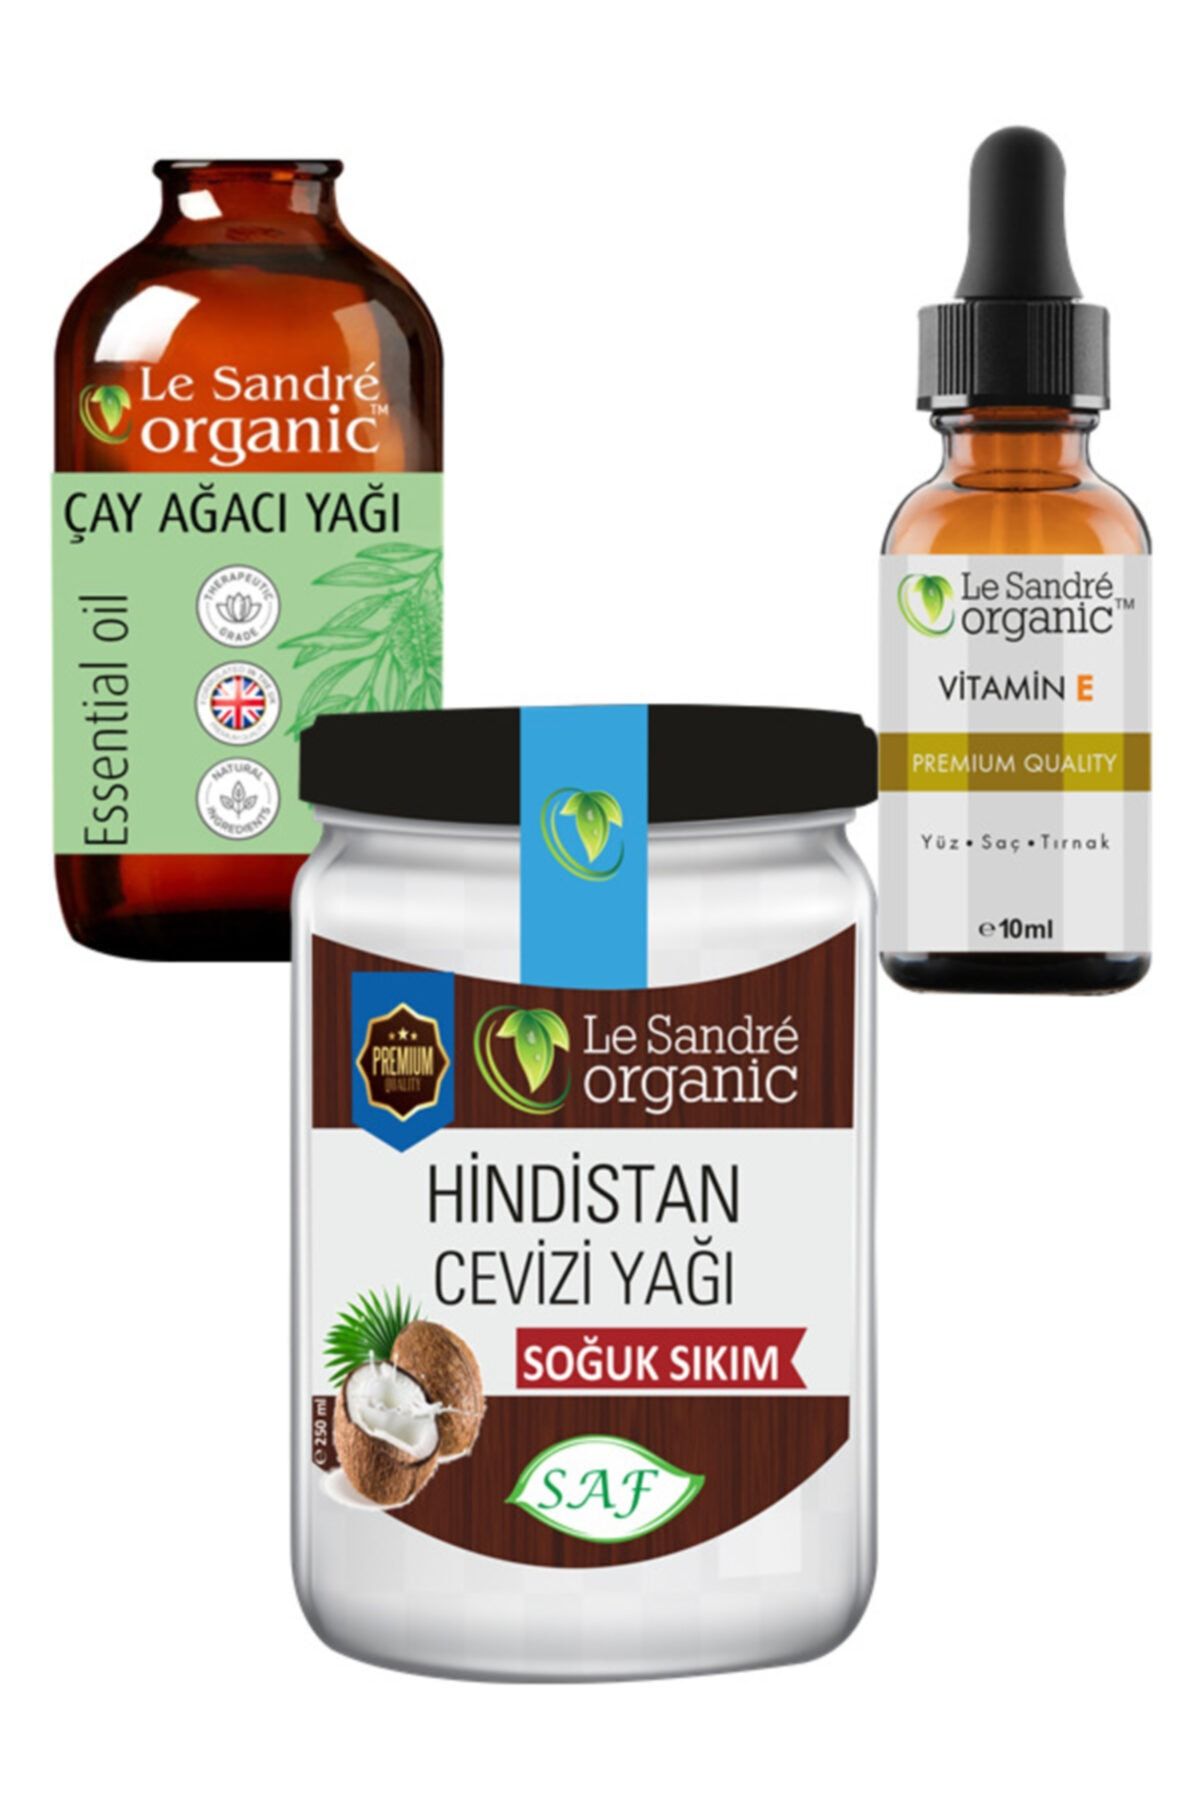 Le'Sandre Organics Hindistan Cevizi Yağı ve Çay Ağacı Yapı ve E Vitamini